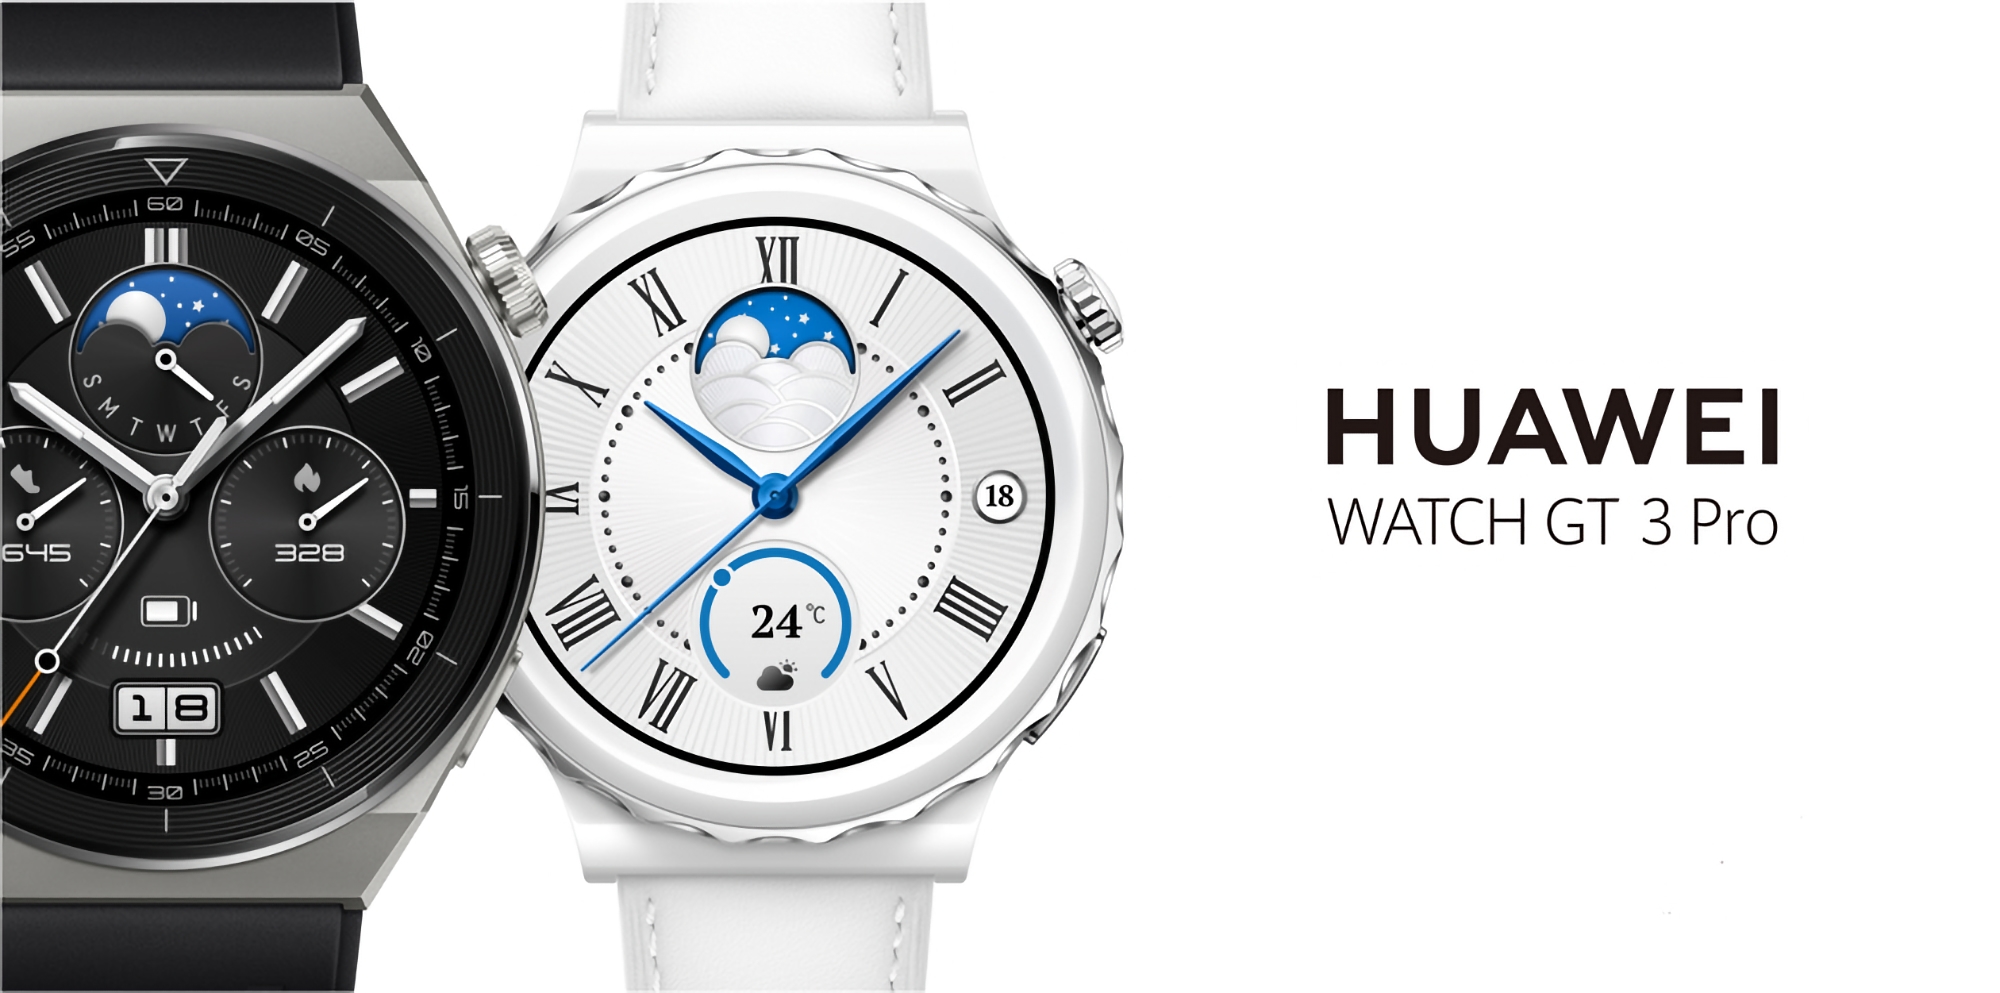 Nutzer der Huawei Watch GT 3 Pro erhalten ab sofort weltweit das HarmonyOS 4-Update